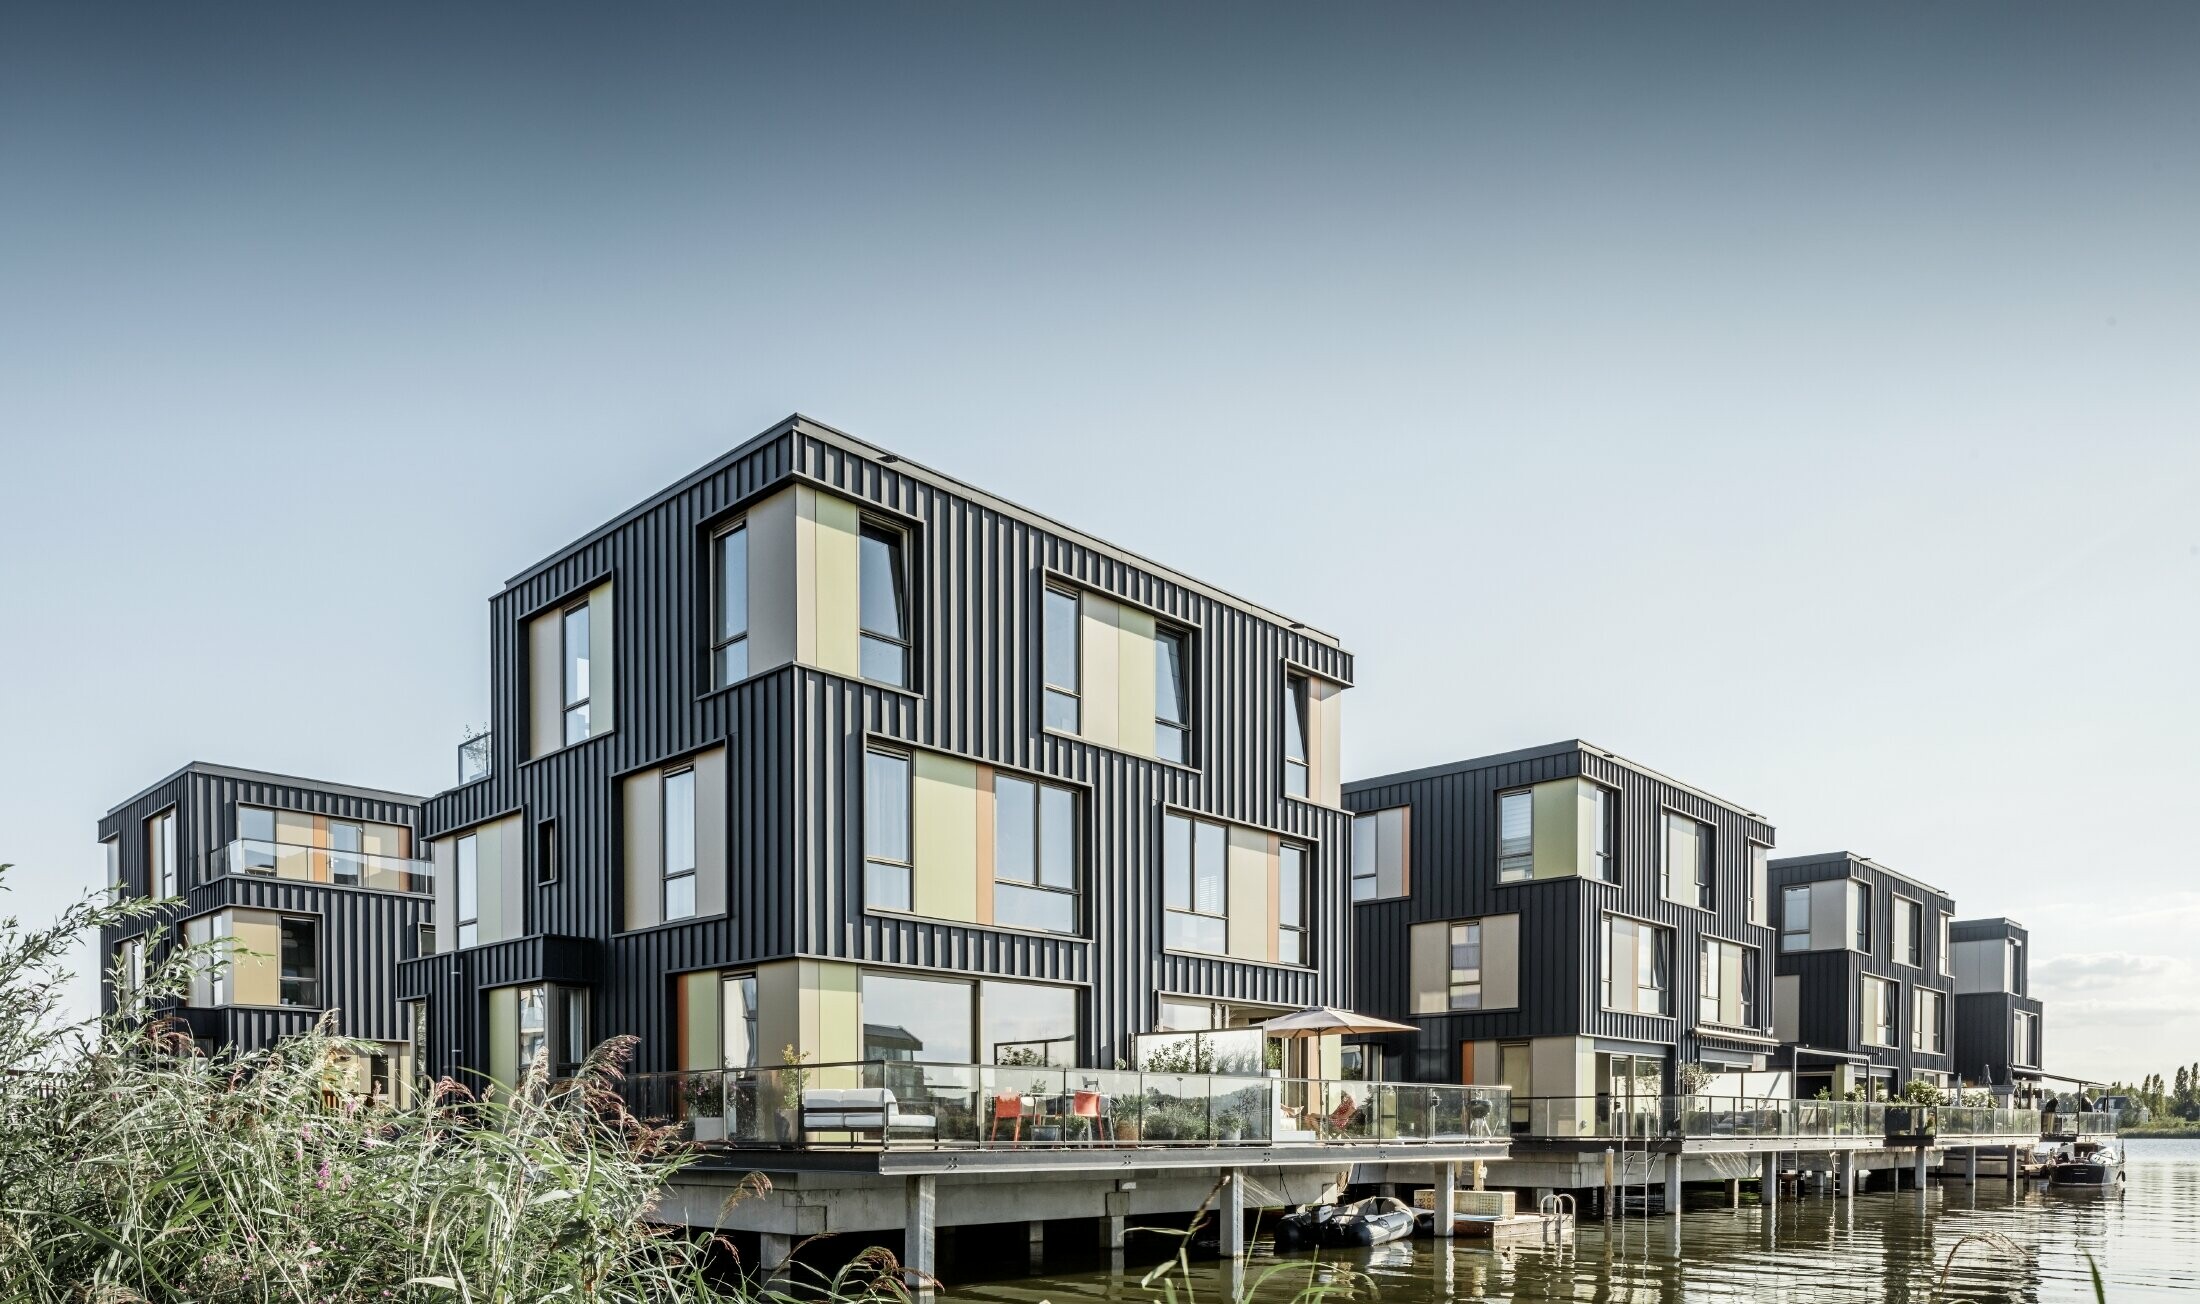 Novi stambeni park s dvostambenim zgradama na jezeru u Amsterdamu. Kuće su obložene Prefalzom tvrtke PREFA u P.10 antracit boji.